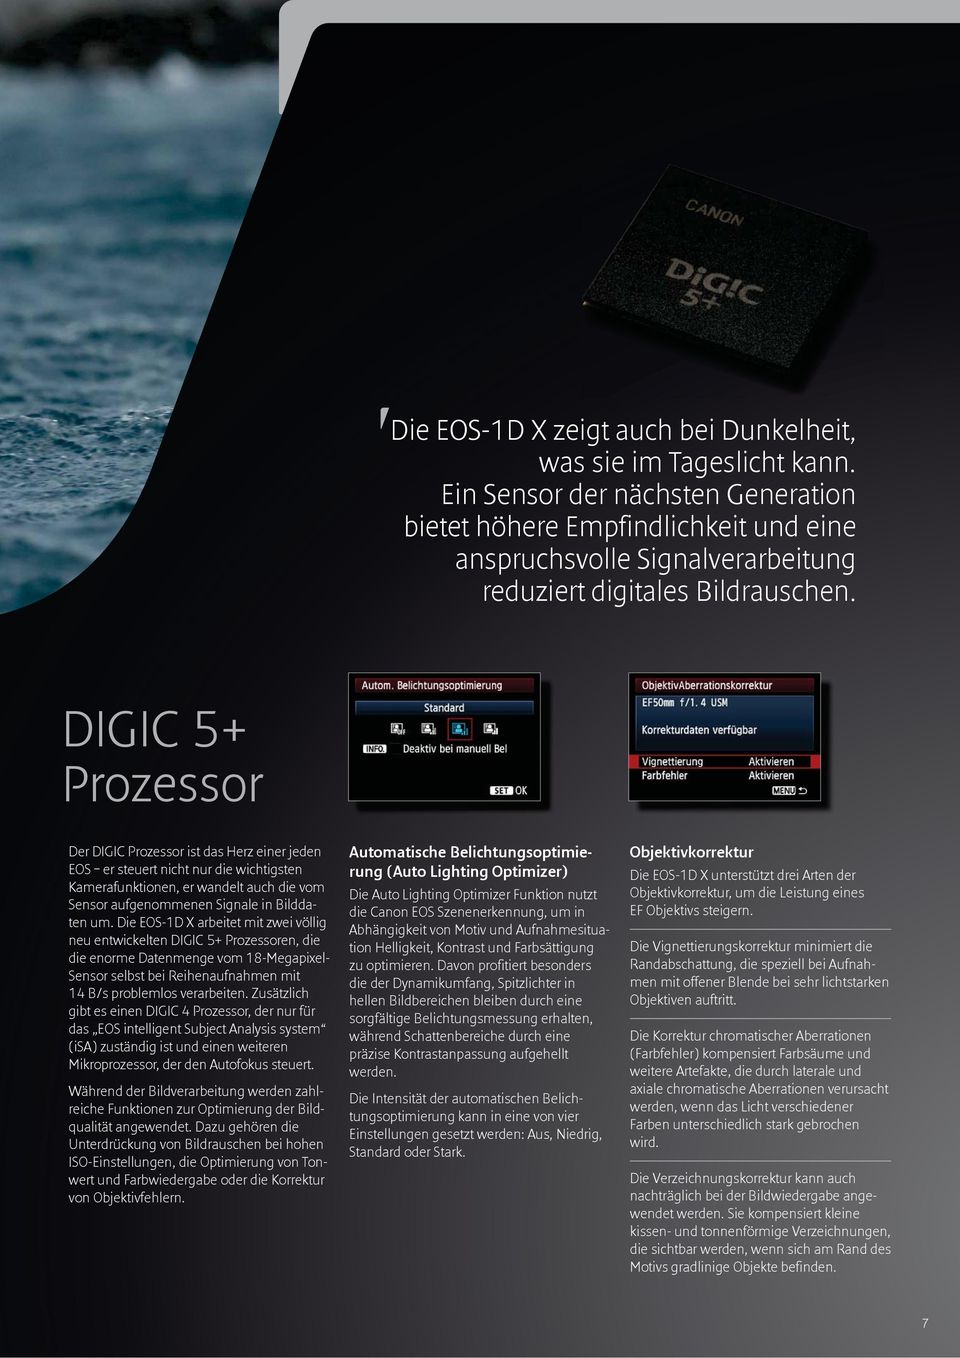 DIGIC 5+ Prozessor Der DIGIC Prozessor ist das Herz einer jeden EOS er steuert nicht nur die wichtigsten Kamerafunktionen, er wandelt auch die vom Sensor aufgenommenen Signale in Bildda - ten um.